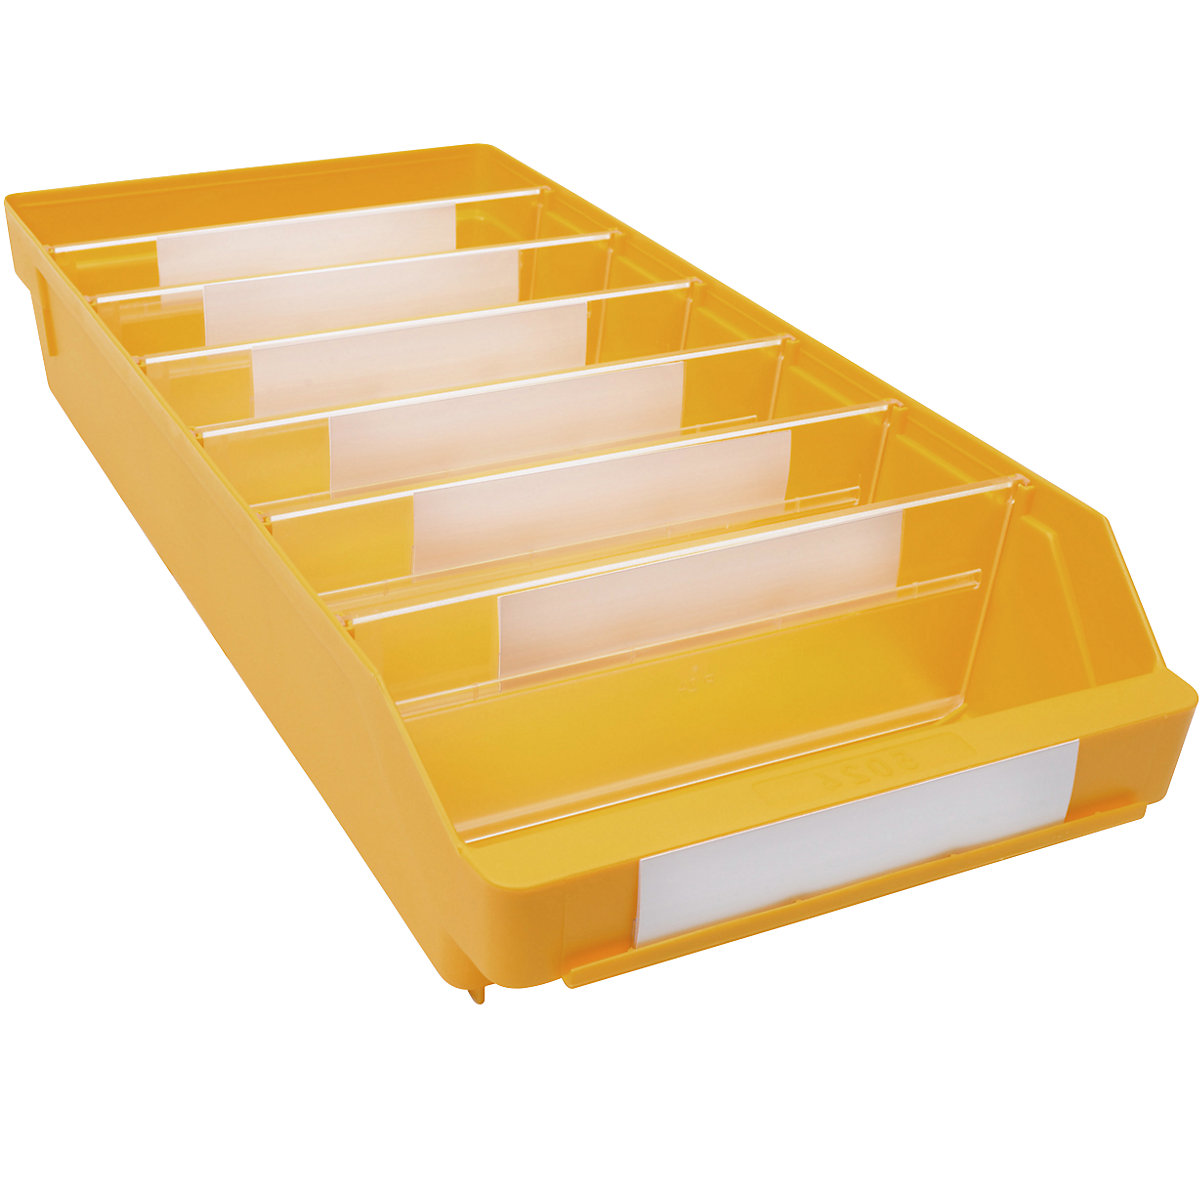 Regalkasten aus hochschlagfestem Polypropylen STEMO, gelb, LxBxH 500 x 240 x 95 mm, VE 15 Stk-9